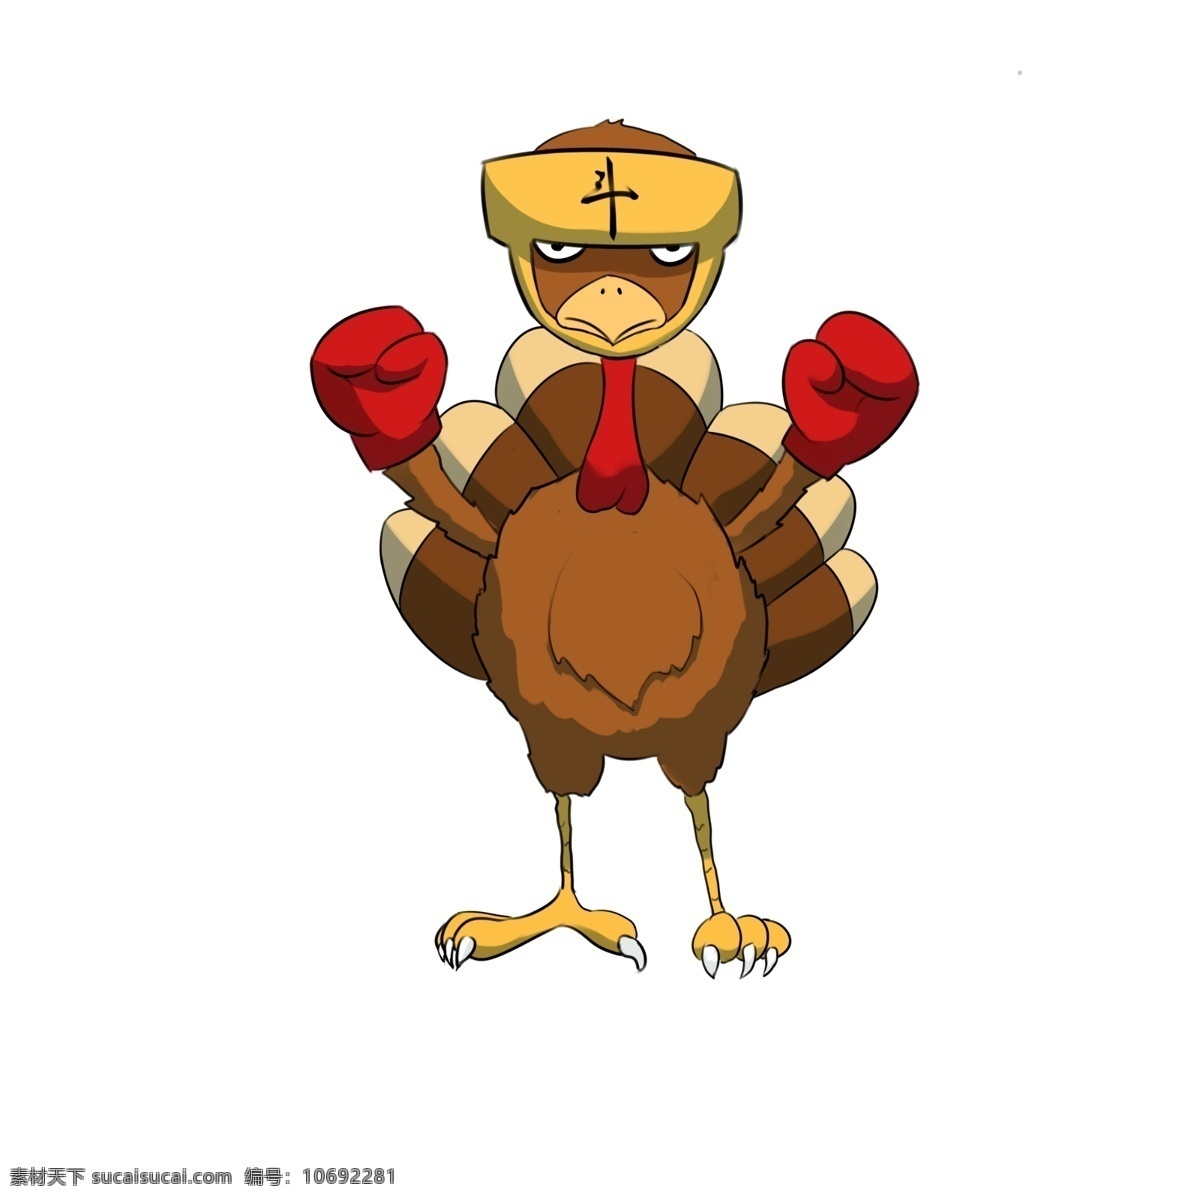 感恩节 火鸡 斗鸡 插画 感恩节火鸡 红色的拳套 黄色的斗鸡 卡通火鸡 手绘火鸡